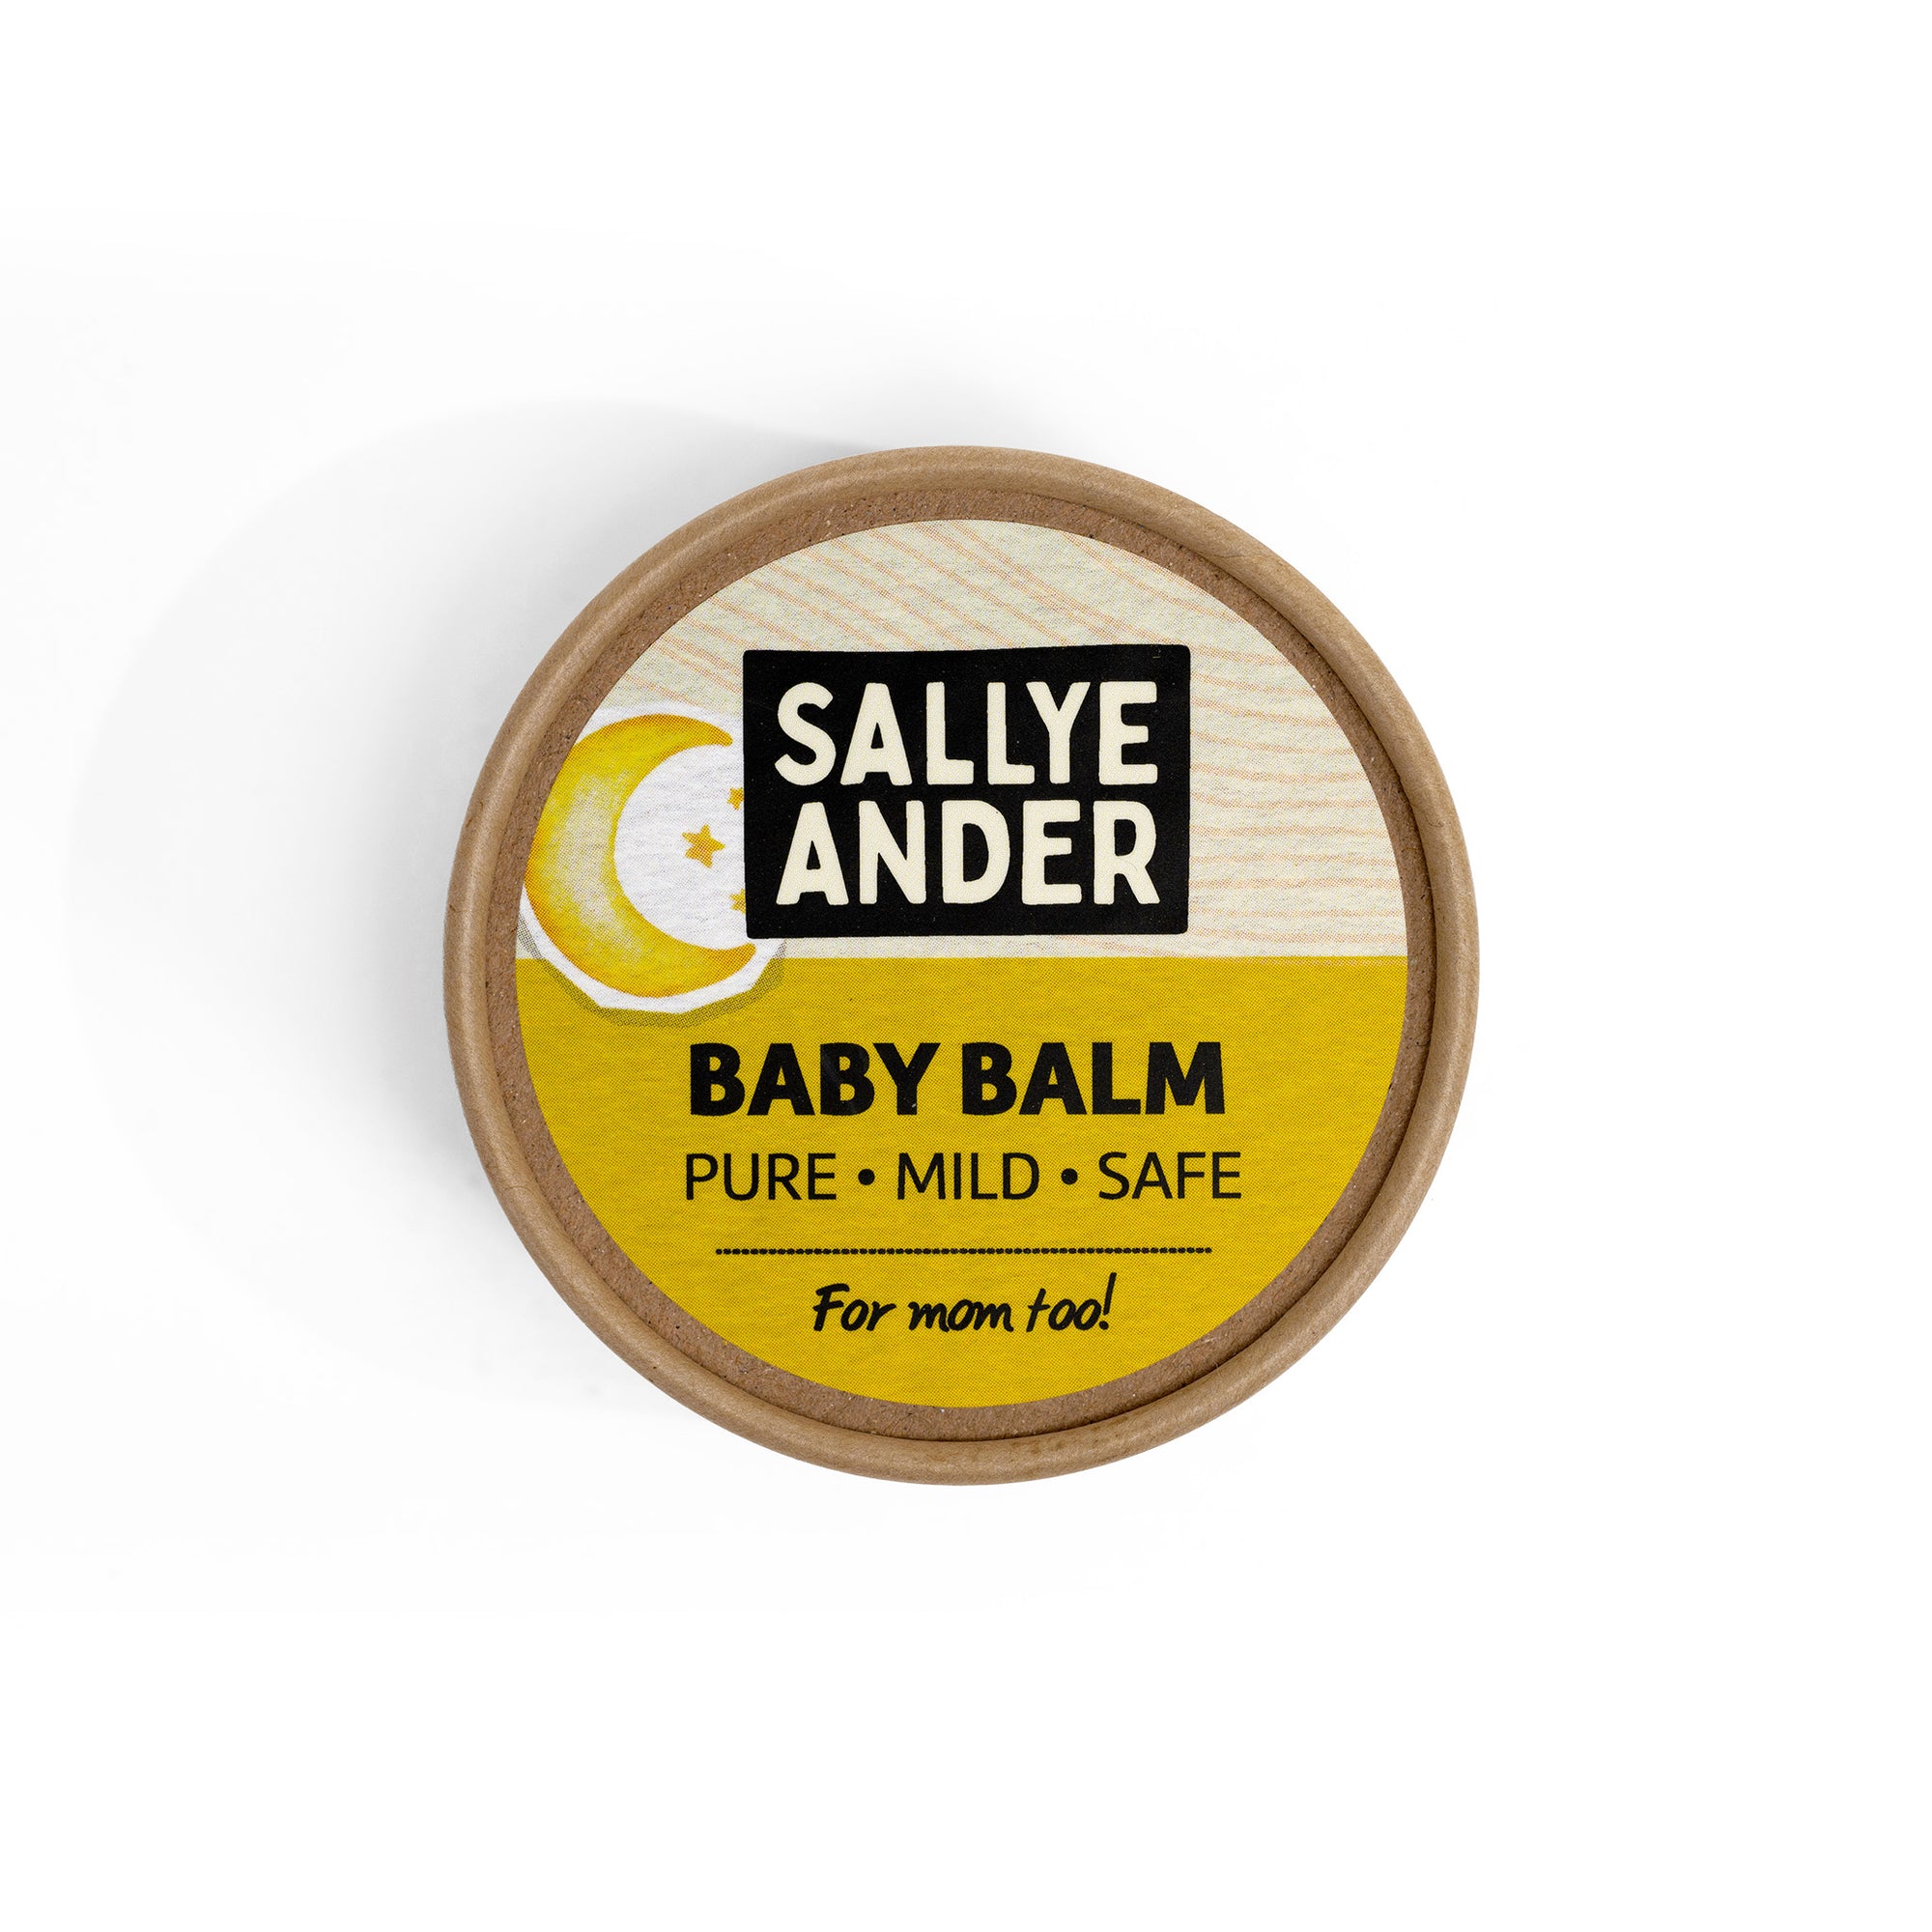 SallyeAnder's Pure Mild Baby Balm